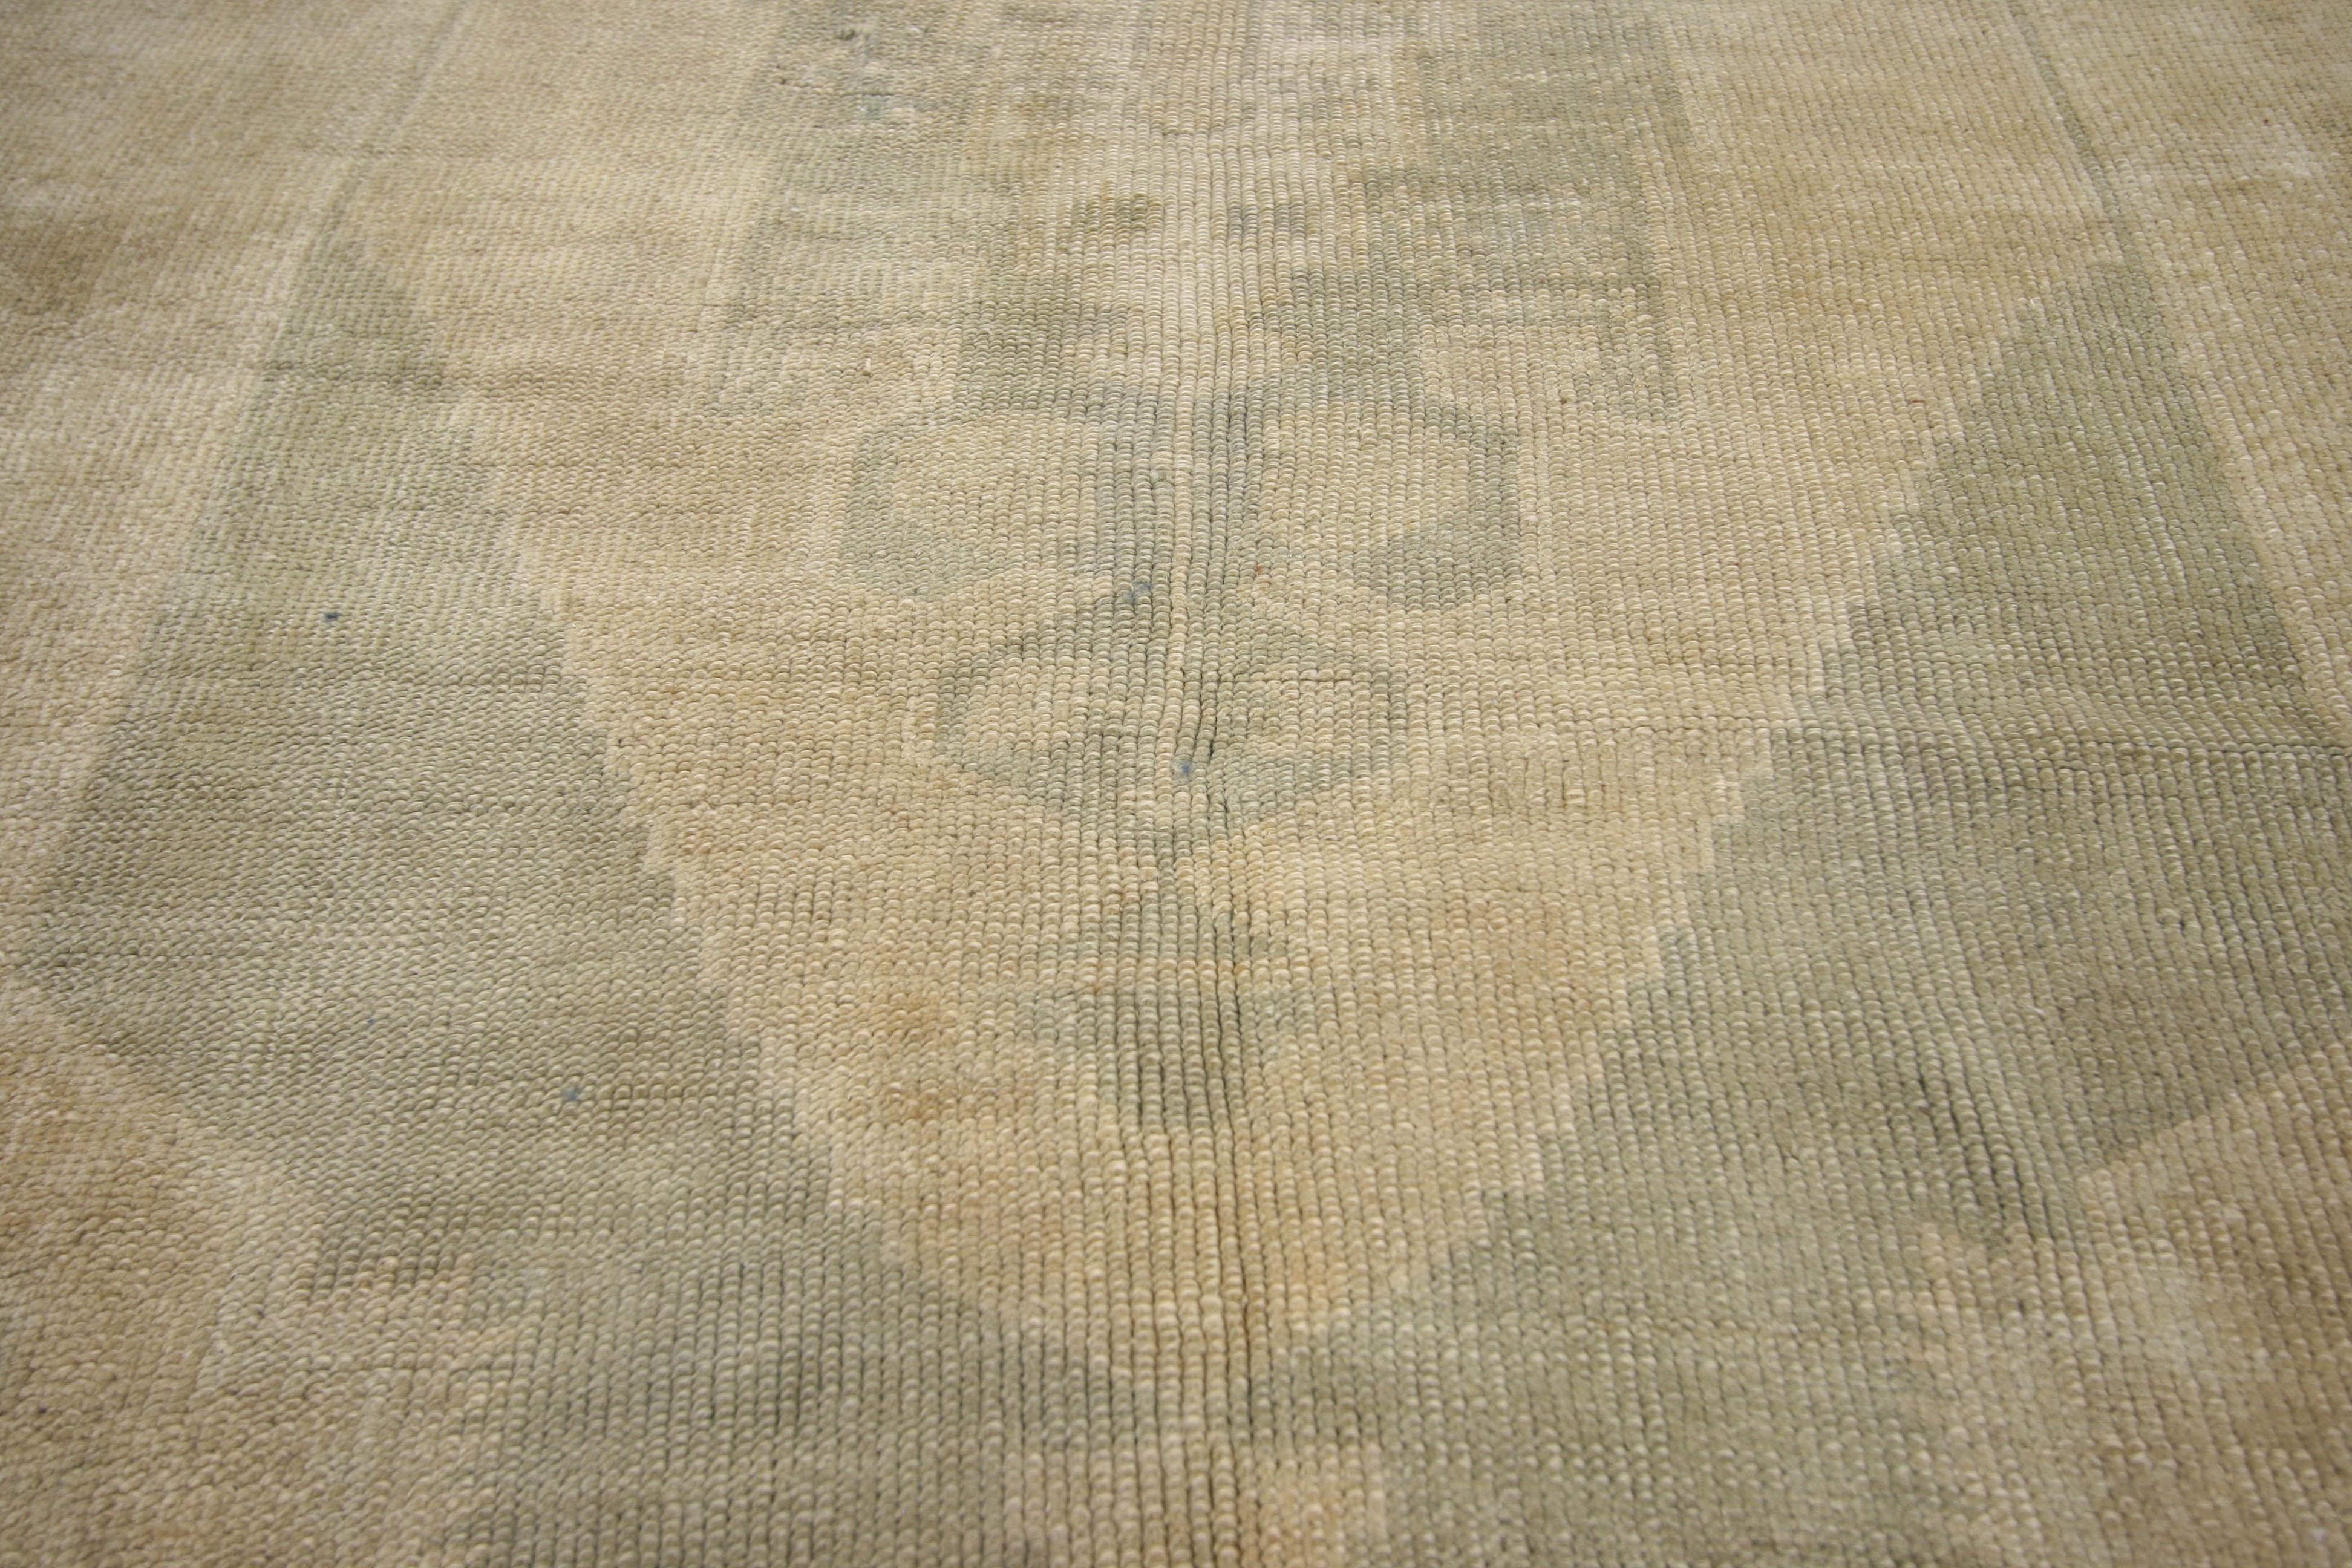 52312, alter türkischer Oushak-Teppich mit gedeckten Farben. Dieser handgeknüpfte türkische Oushak-Teppich aus Wolle, der eine stilvolle Verbindung von traditionellem Stil und gemütlichem, legerem Wohnen darstellt, schafft eine einladende